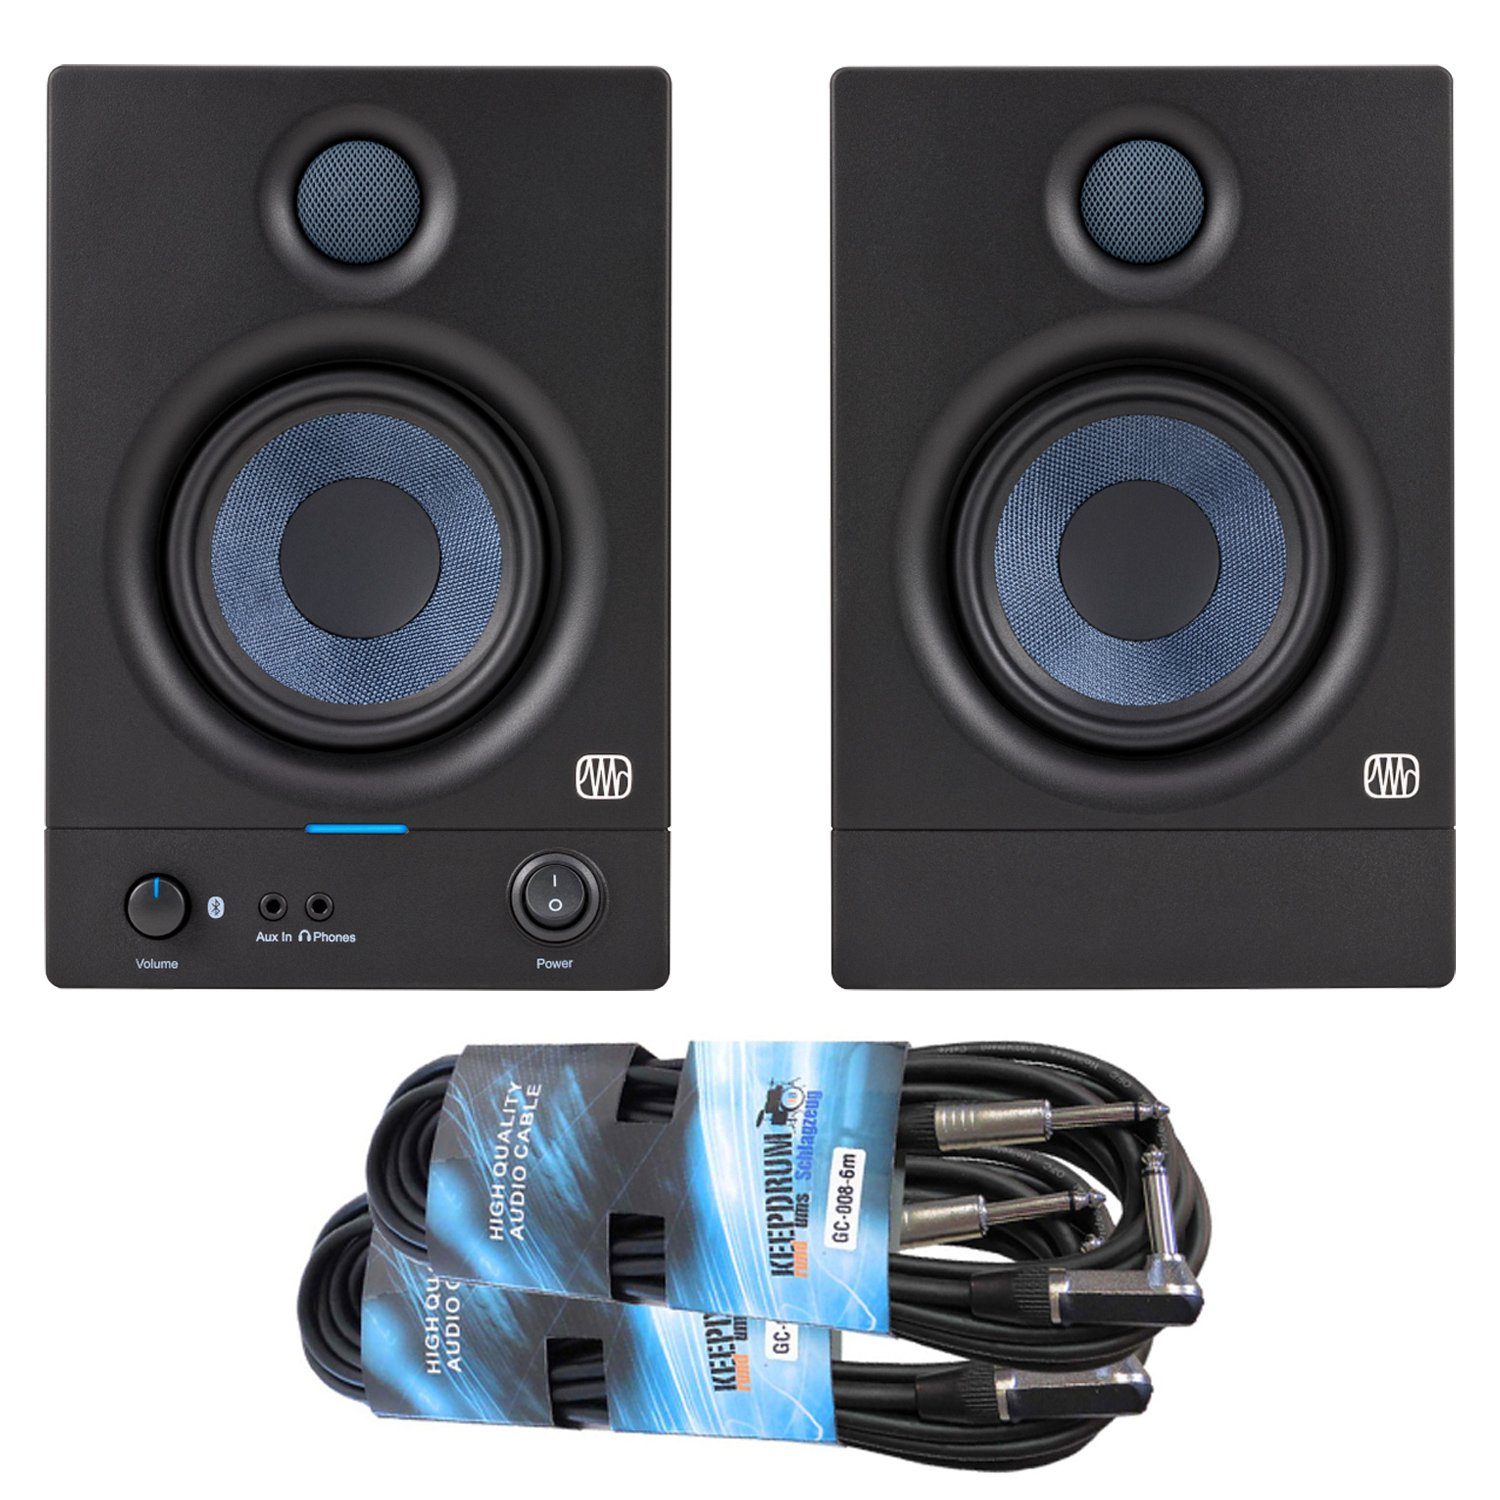 Presonus Eris 4.5BT Studio Monitor-Boxen 2nd Gen PC-Lautsprecher (Bluetooth, 50 W, mit 2x Klinkenkabel)